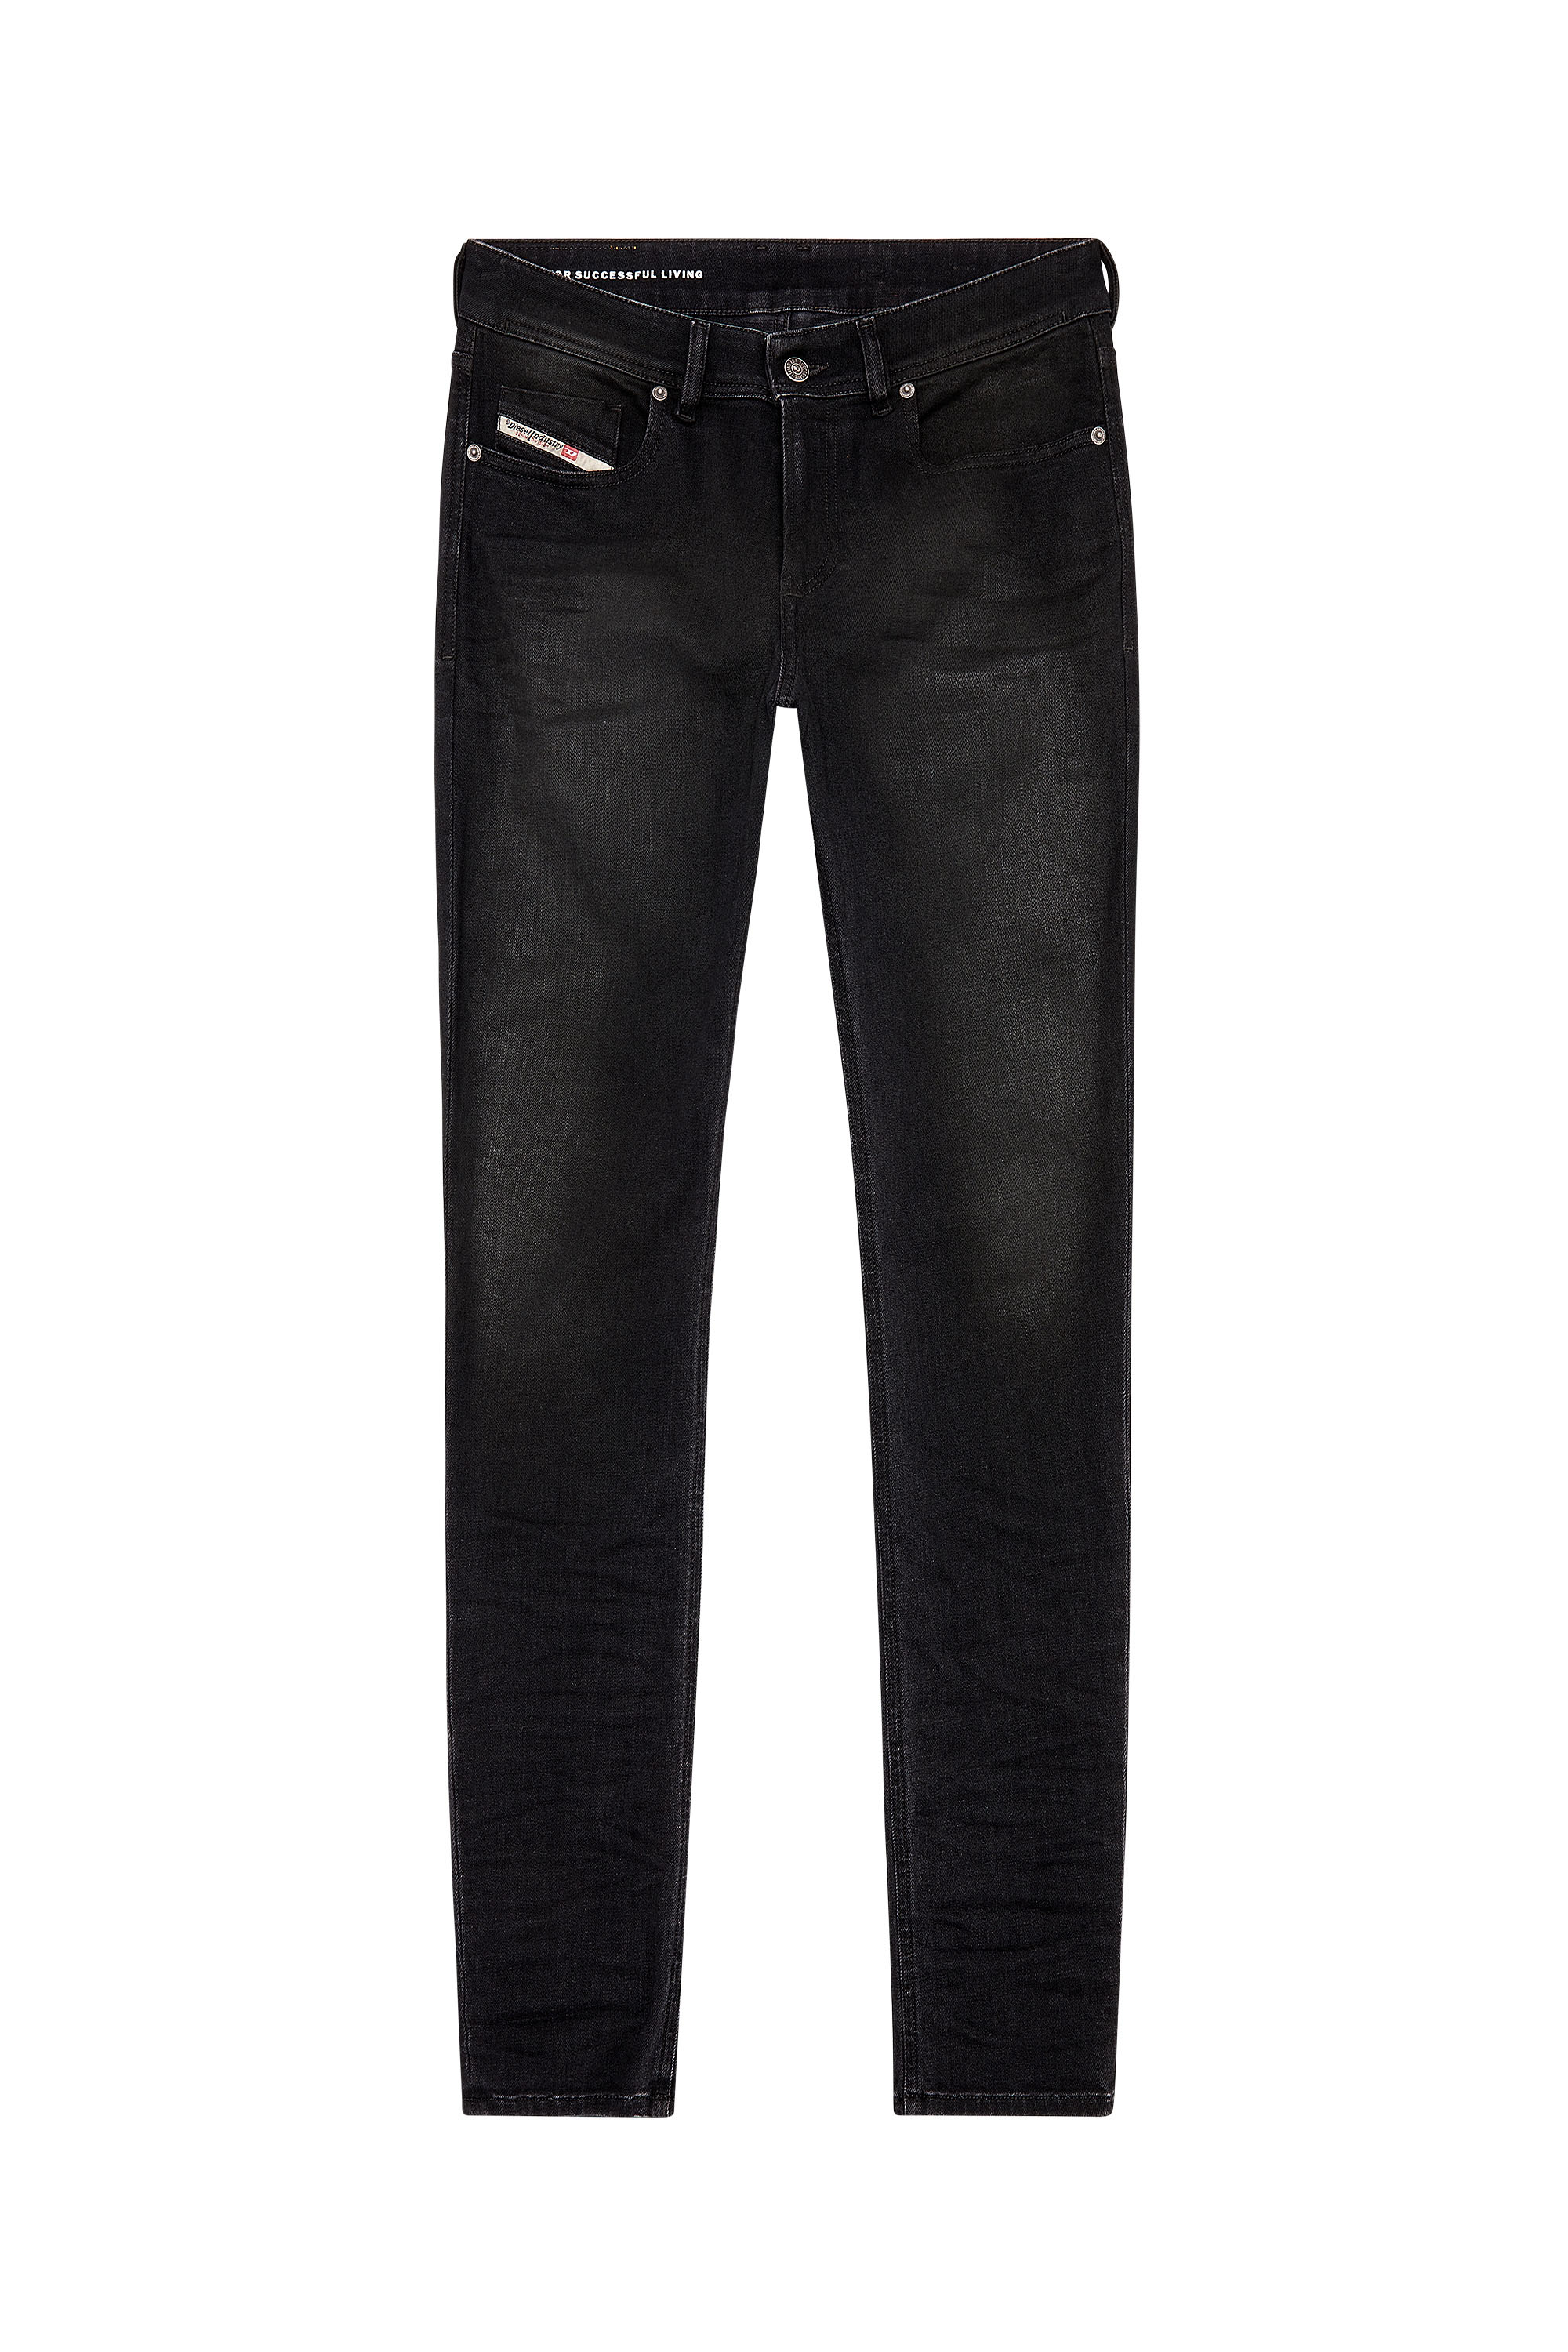 Diesel - Skinny Jeans 1979 Sleenker 09H94, Black/Dark grey - Image 3